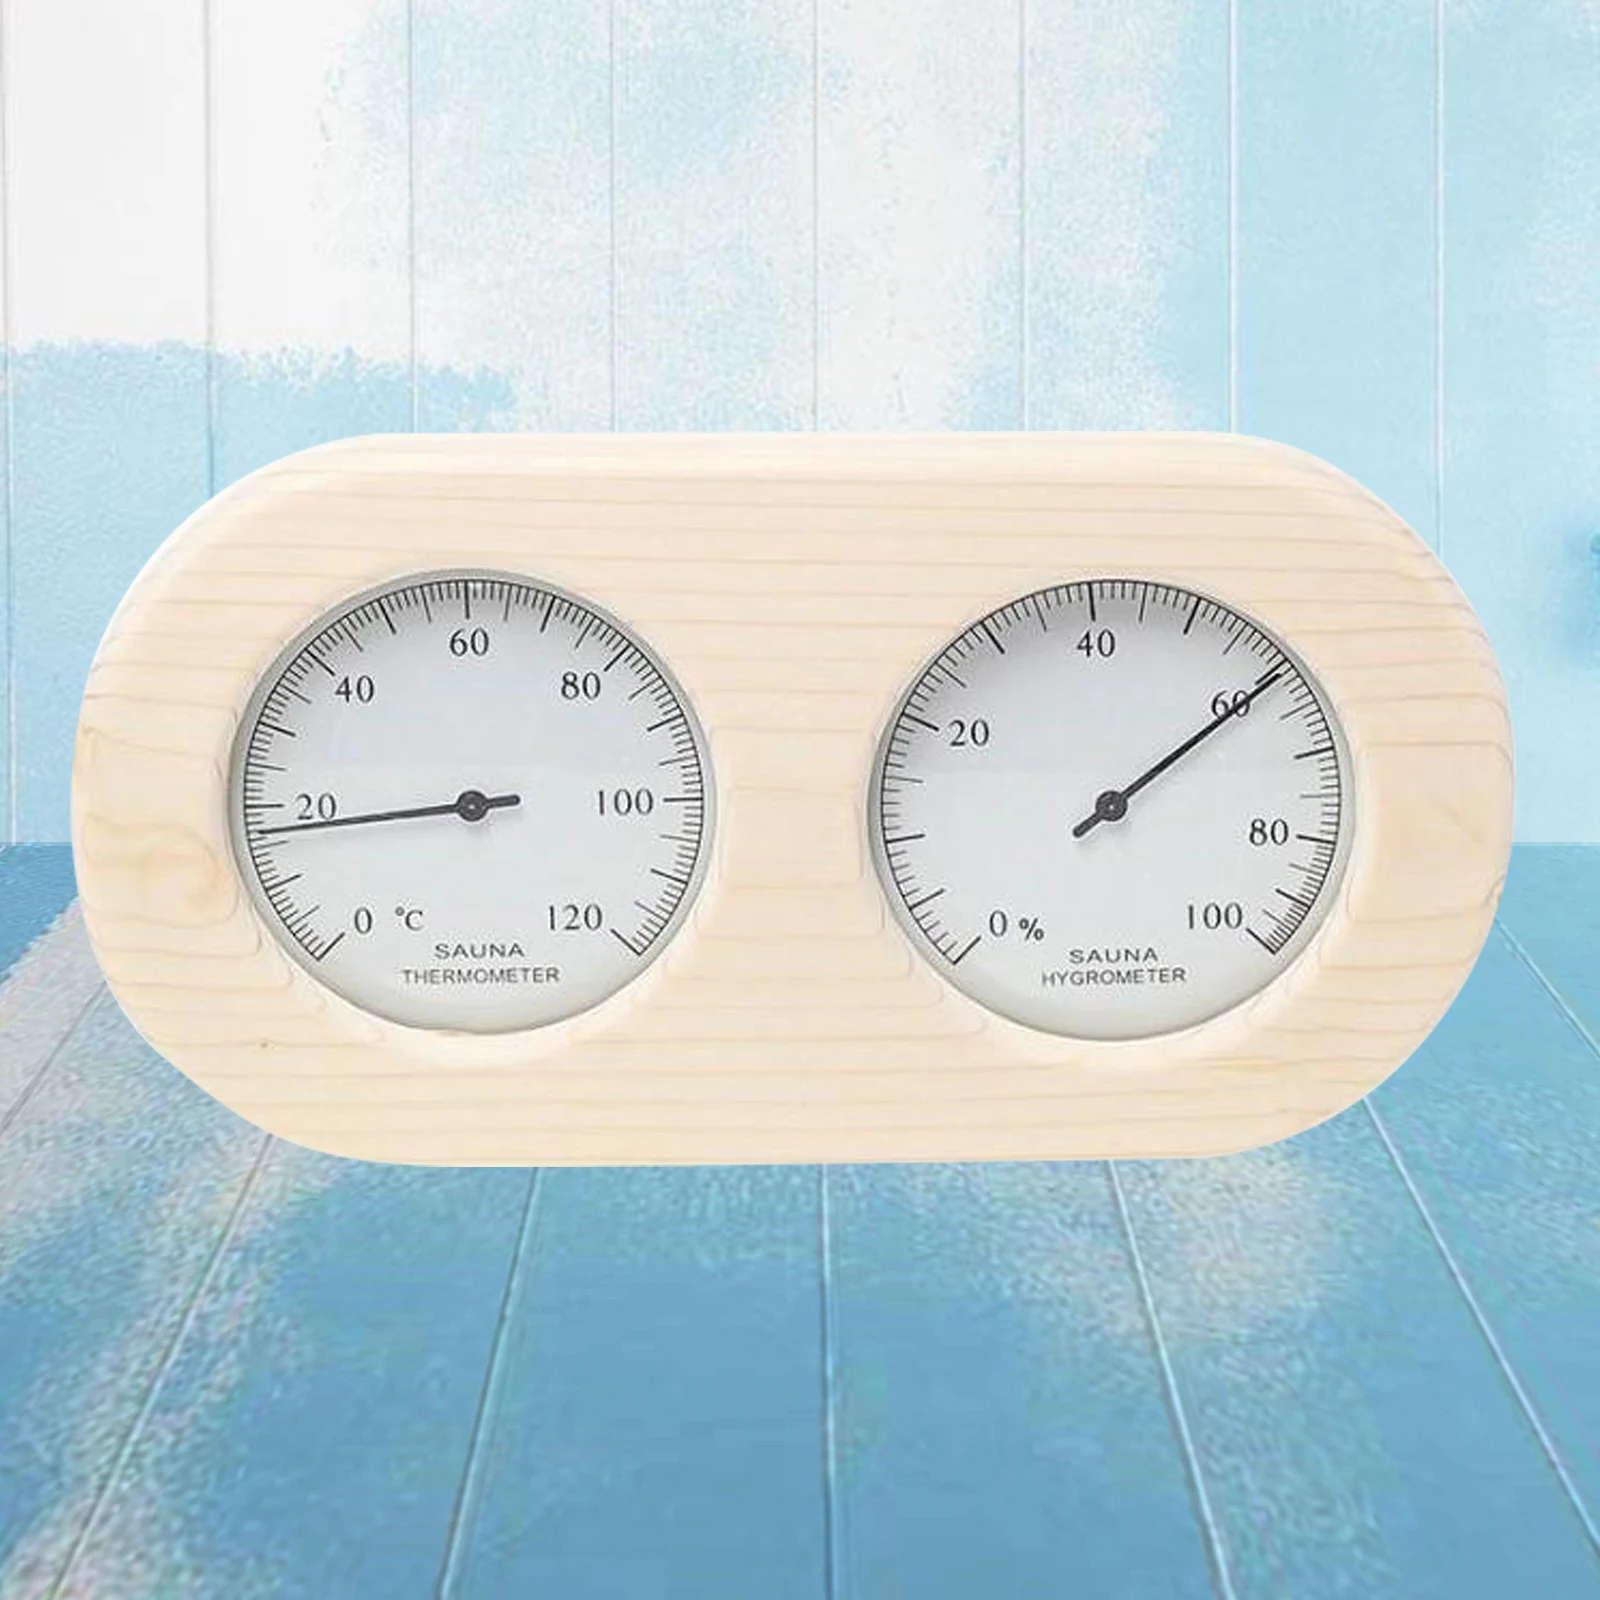 Ulapithi Thermomètre de Sauna hygromètre en Bois 2 en 1 Accessoires de Sauna pour mesurer l'humidité de la température ambiante du Sauna 